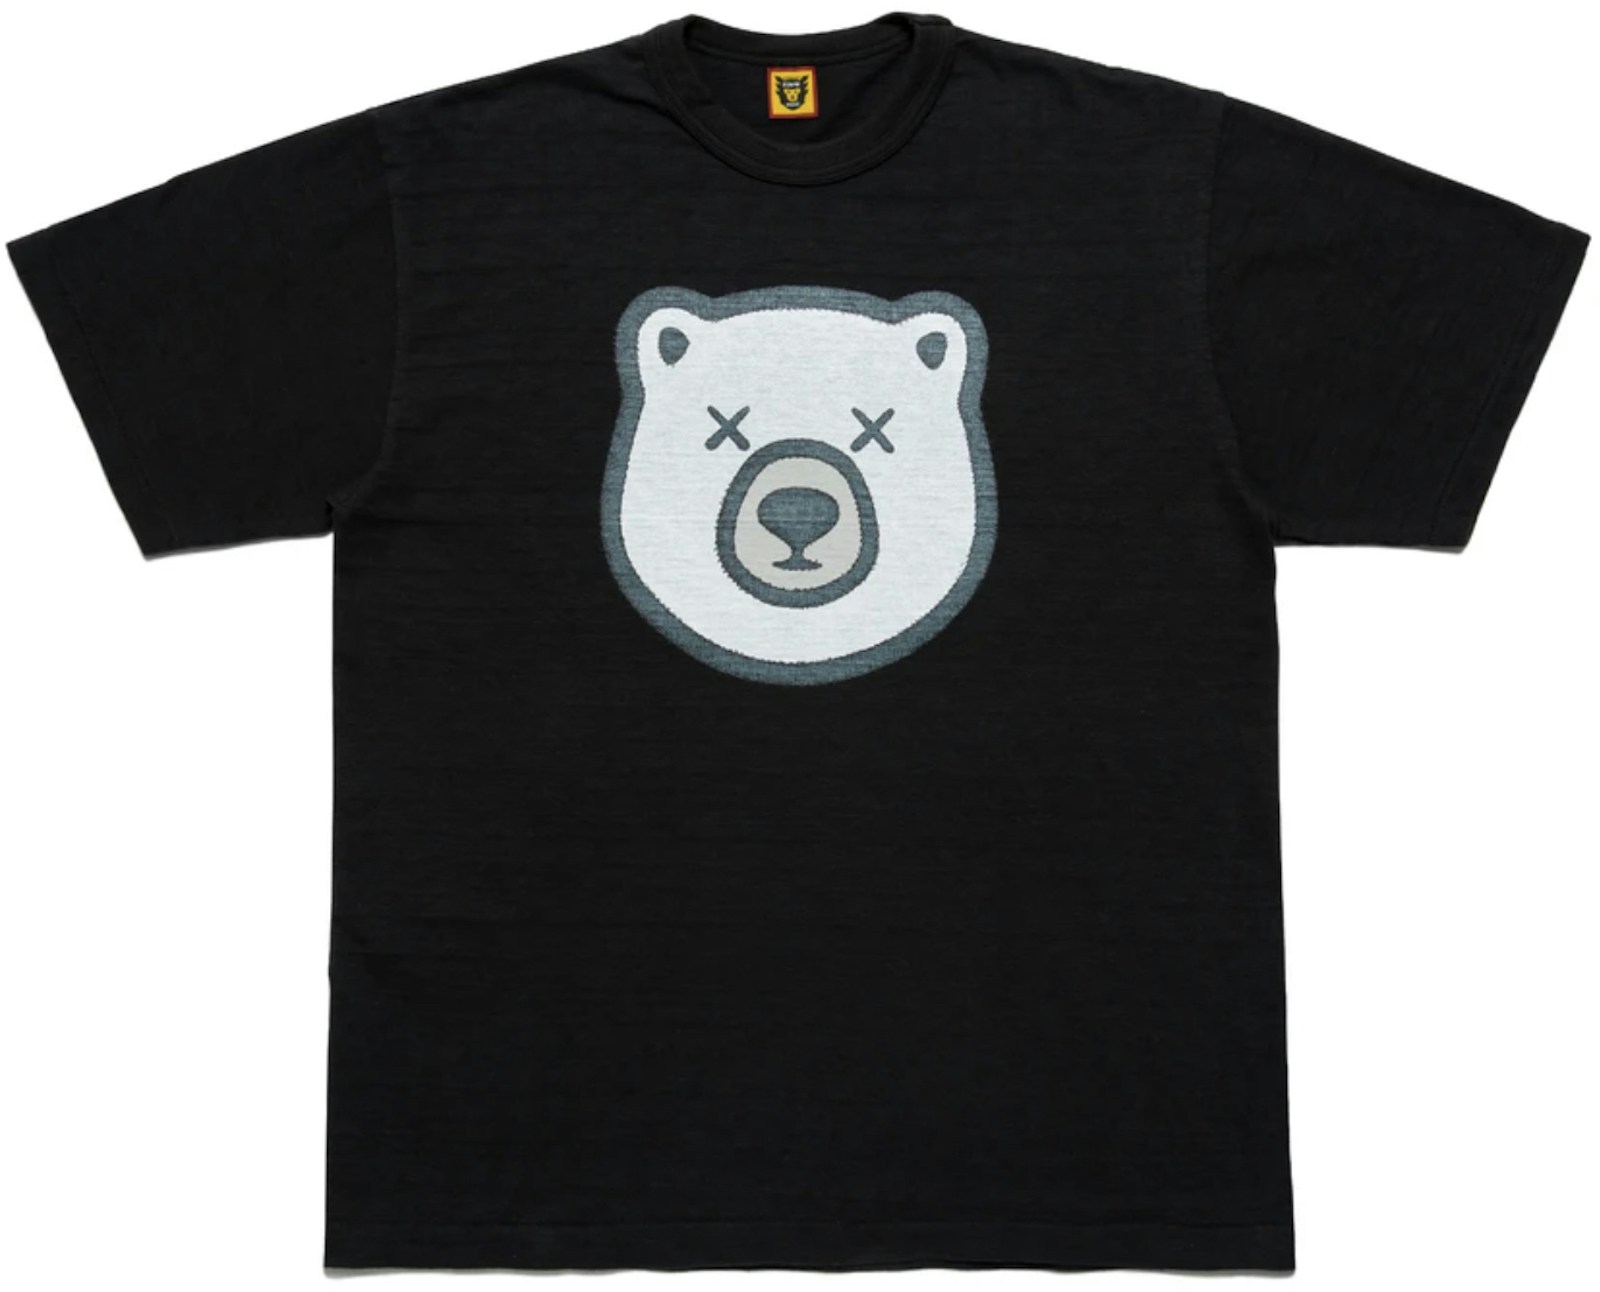 Human Made x KAWS #5 T-shirt Black - SS21